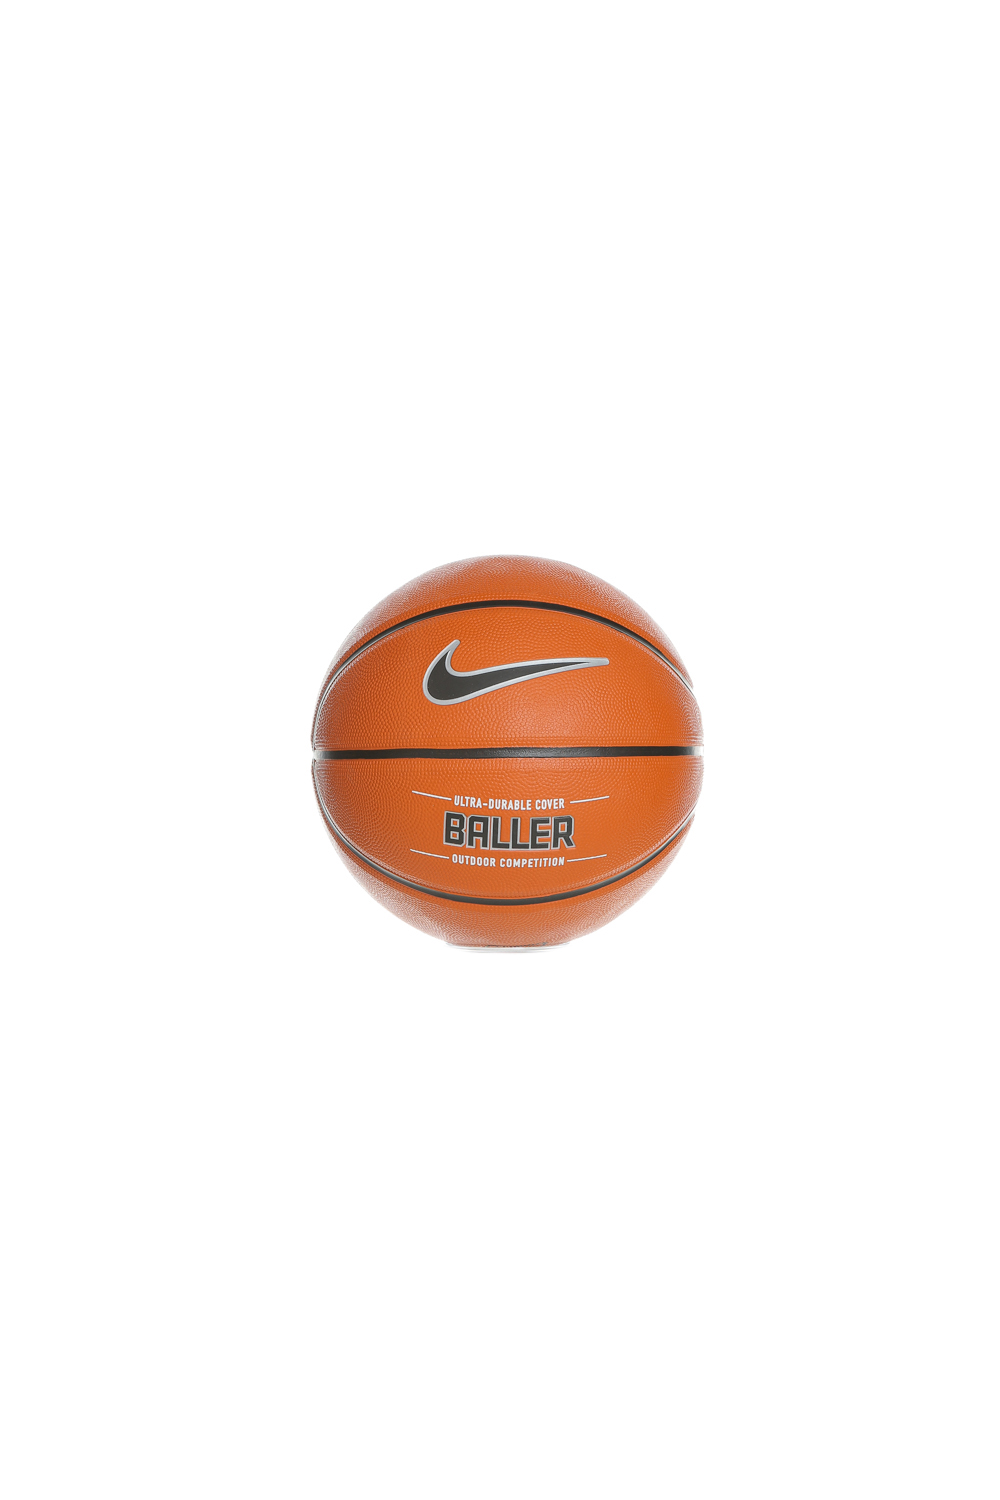 Γυναικεία/Αξεσουάρ/Αθλητικά Είδη/Μπάλες NIKE ACCESSORIES - Μπάλα μπάσκετ NIKE BALLER 8P